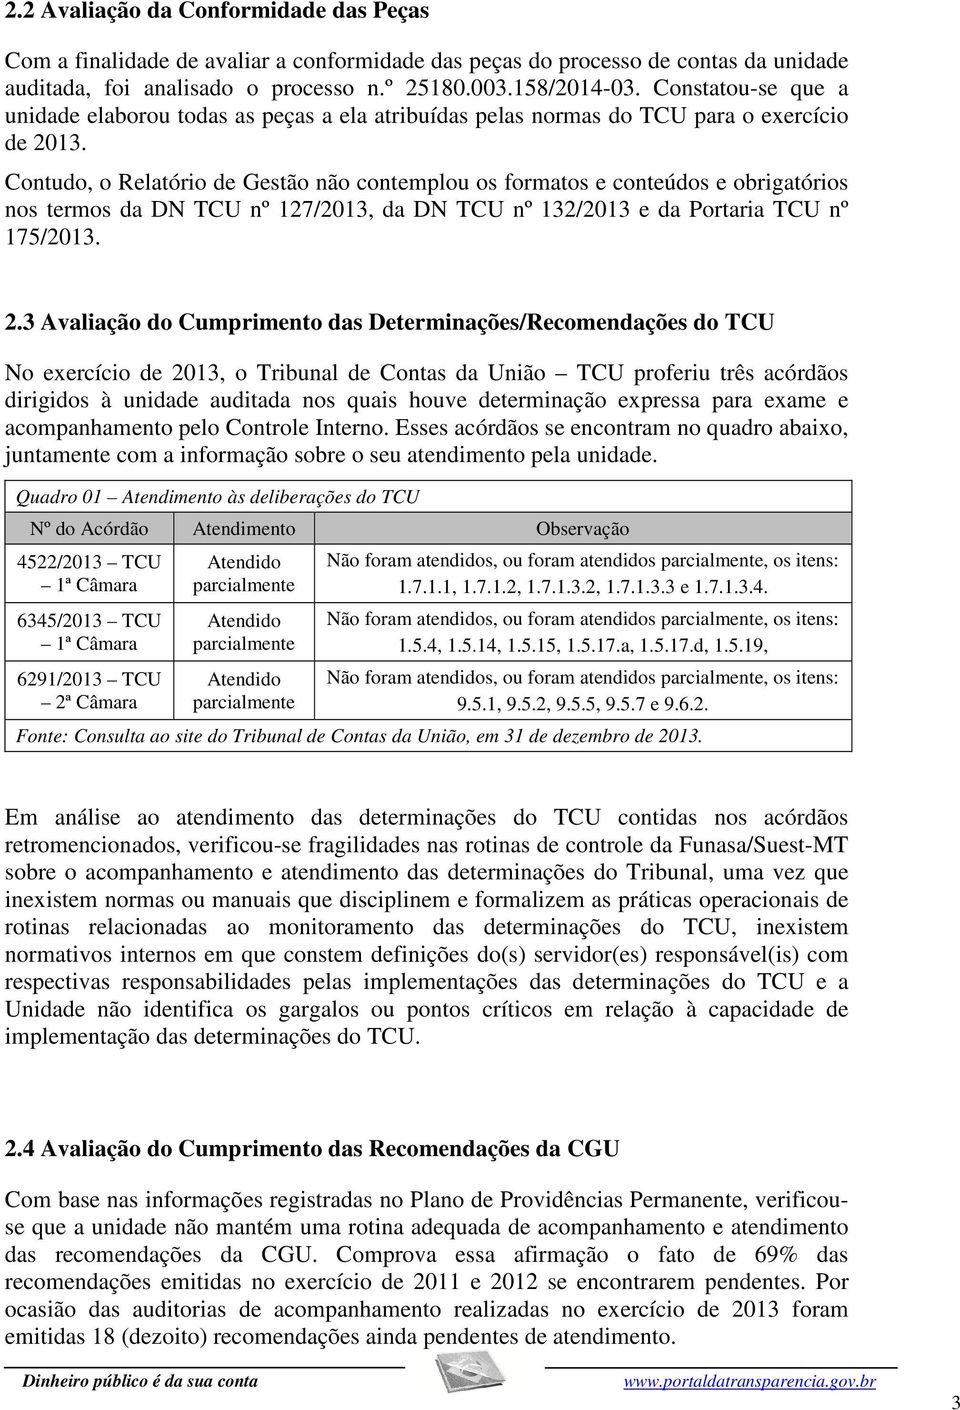 Contudo, o Relatório de Gestão não contemplou os formatos e conteúdos e obrigatórios nos termos da DN TCU nº 127/2013, da DN TCU nº 132/2013 e da Portaria TCU nº 175/2013. 2.